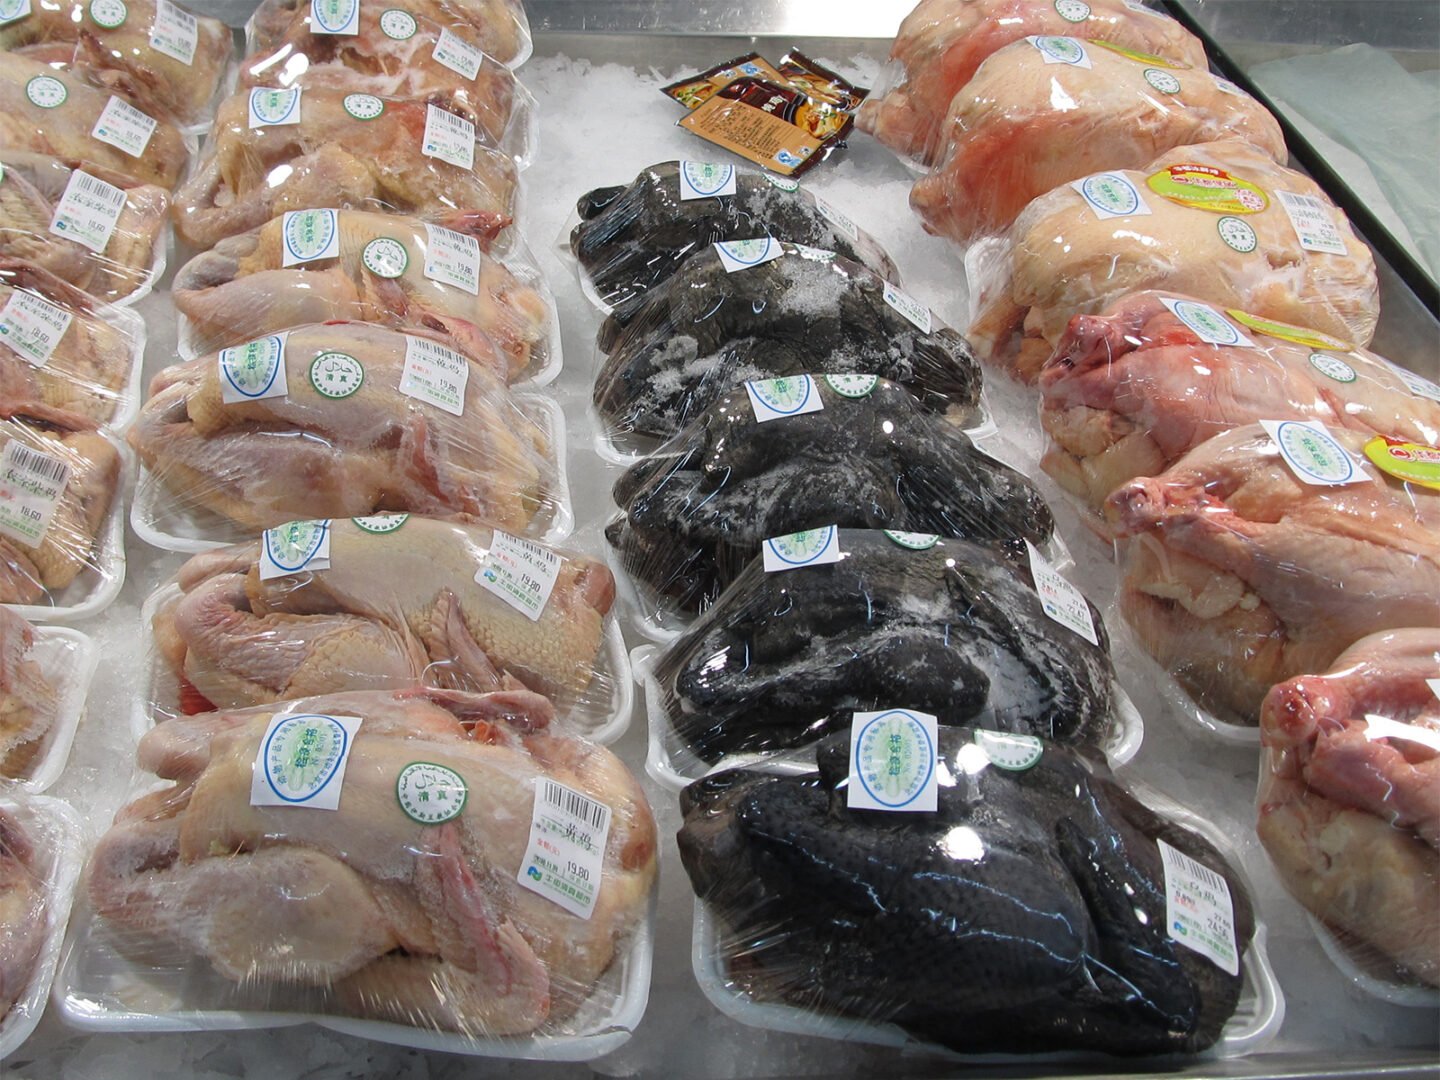 halal certified chicken in Beijing market